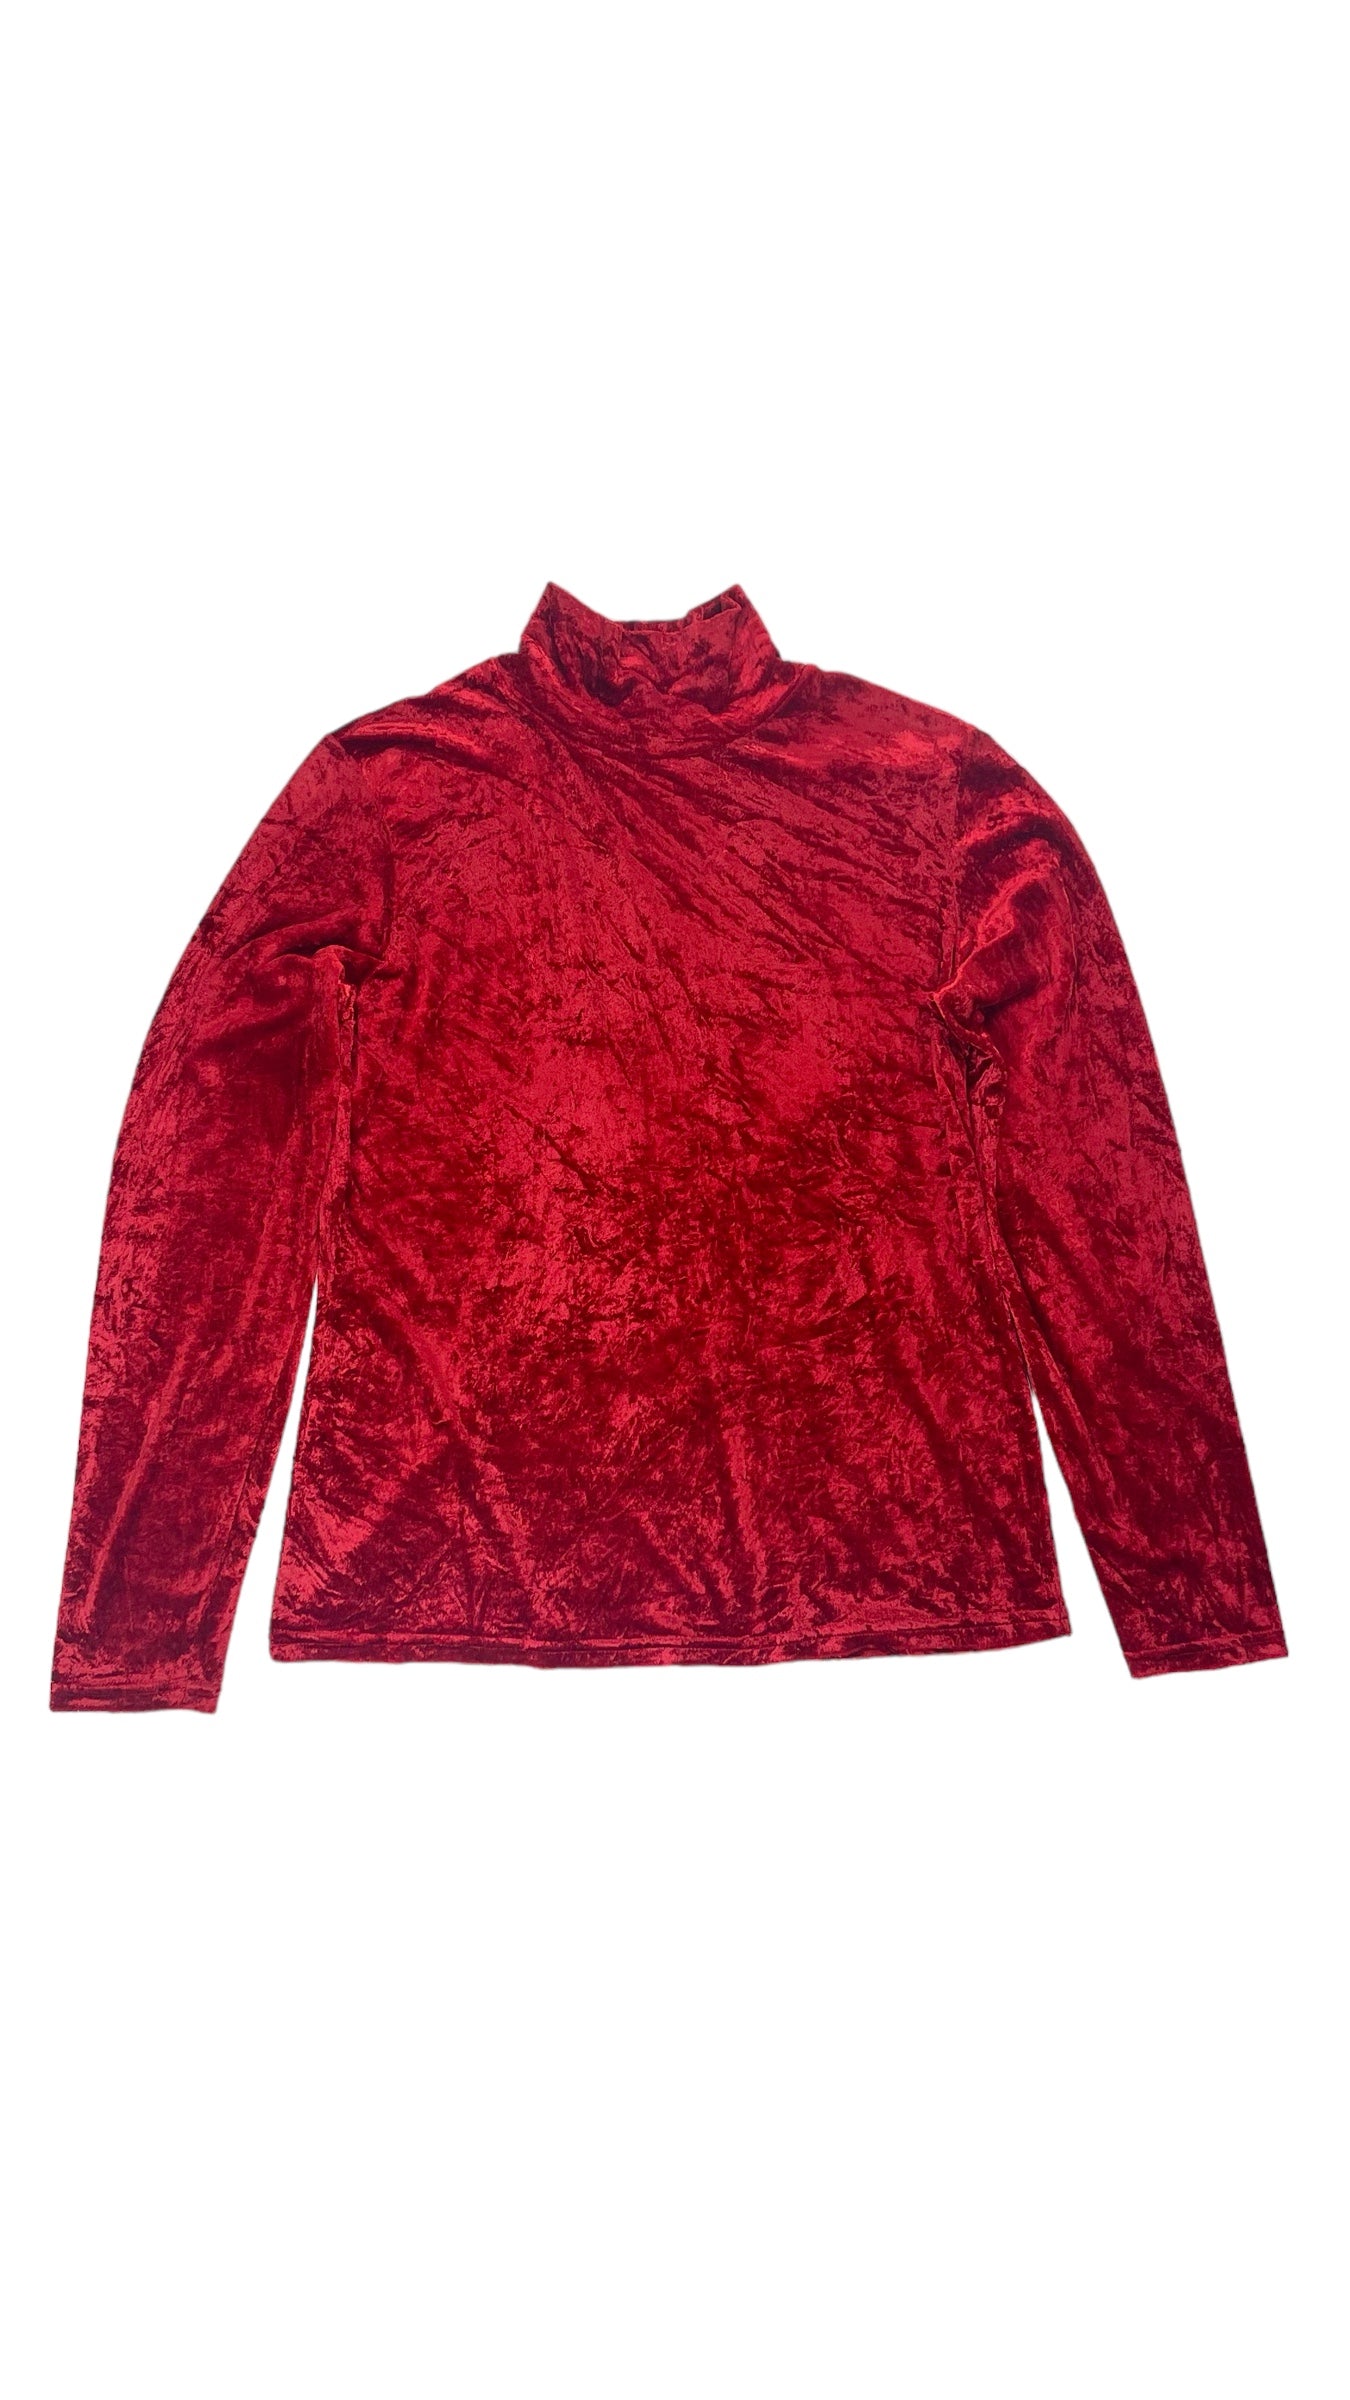 Vintage 90s red crushed velvet GAP mock neck knit long sleeve top - Size L